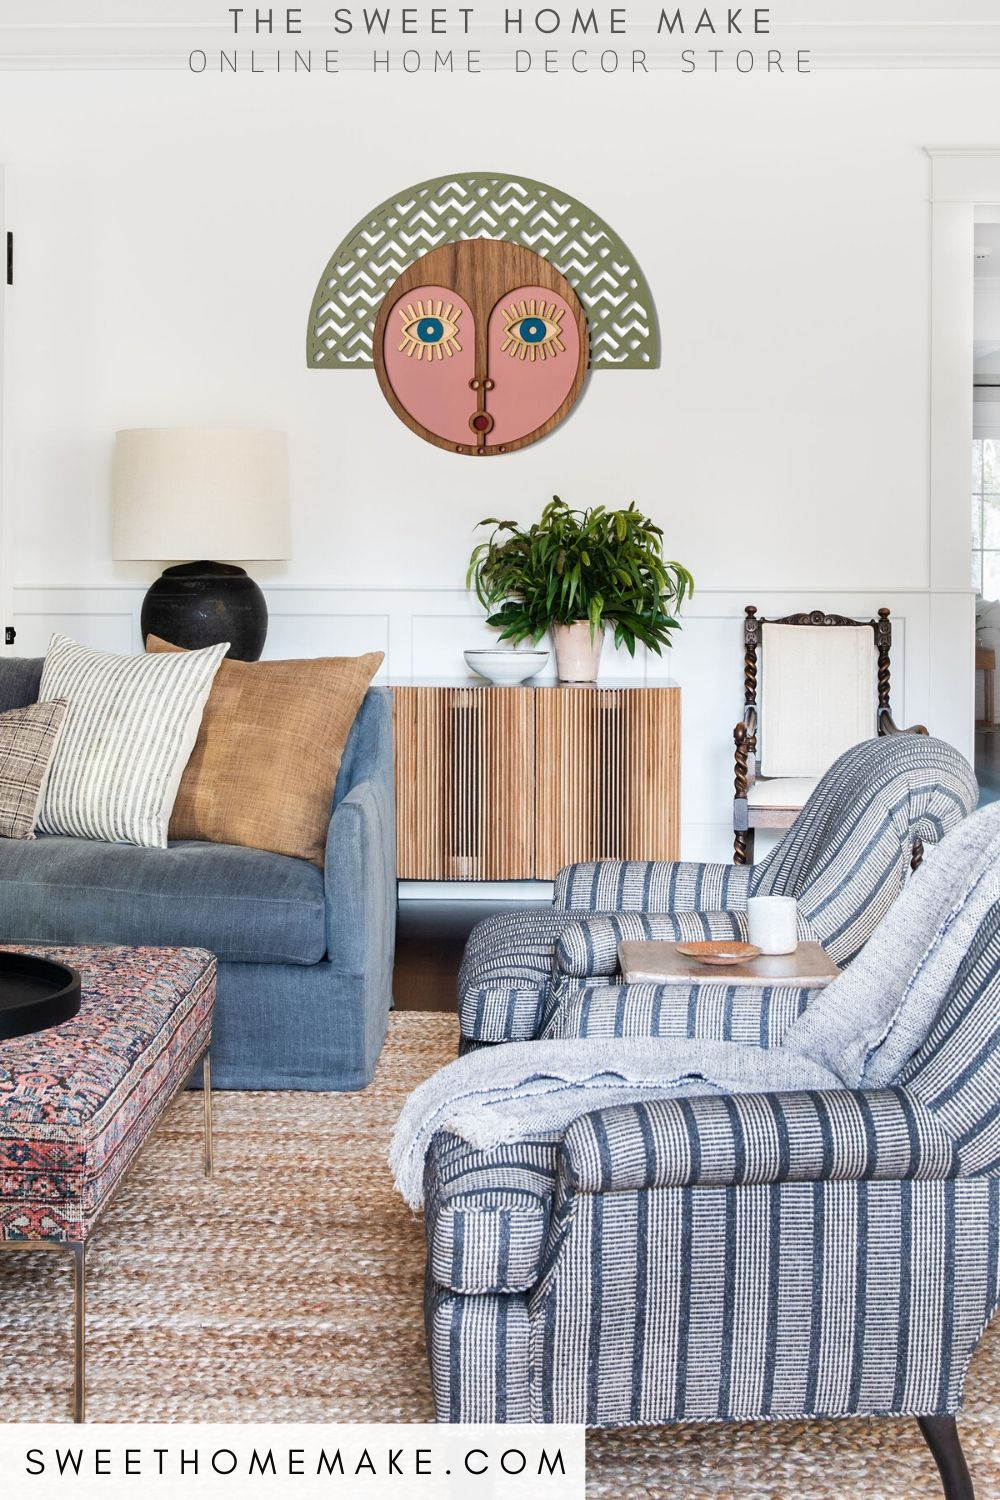 Verwijdering Wanten Patch Bohemian Wanddecoratie Hout van Picasso Gezicht – The Sweet Home Make